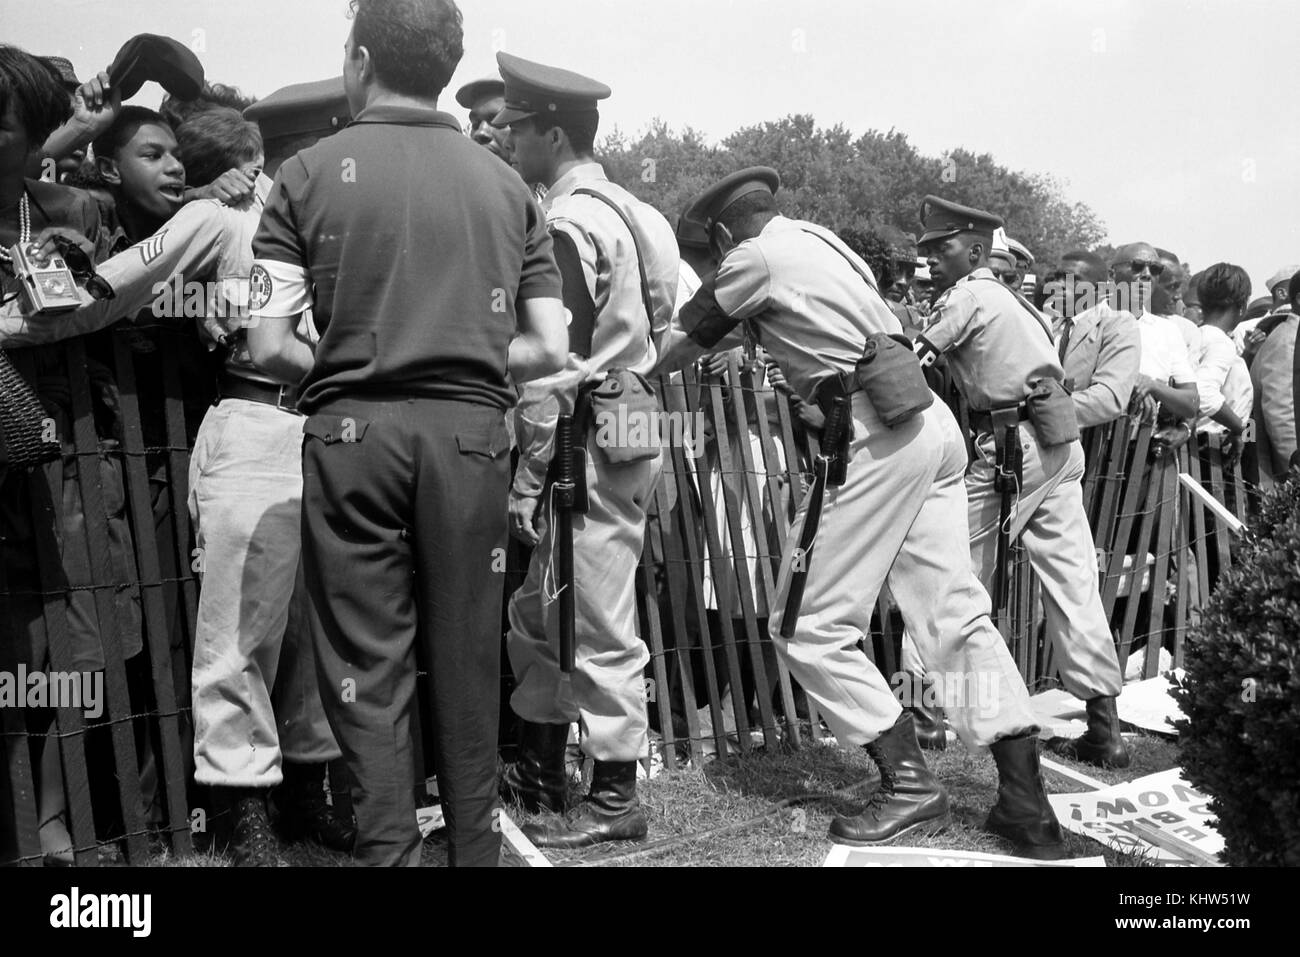 Photographie prise lors d'une manifestation à Washington, une foule d'Afro-Américains derrière une clôture de tempête avec la police de l'autre côté. En date du 20e siècle Banque D'Images